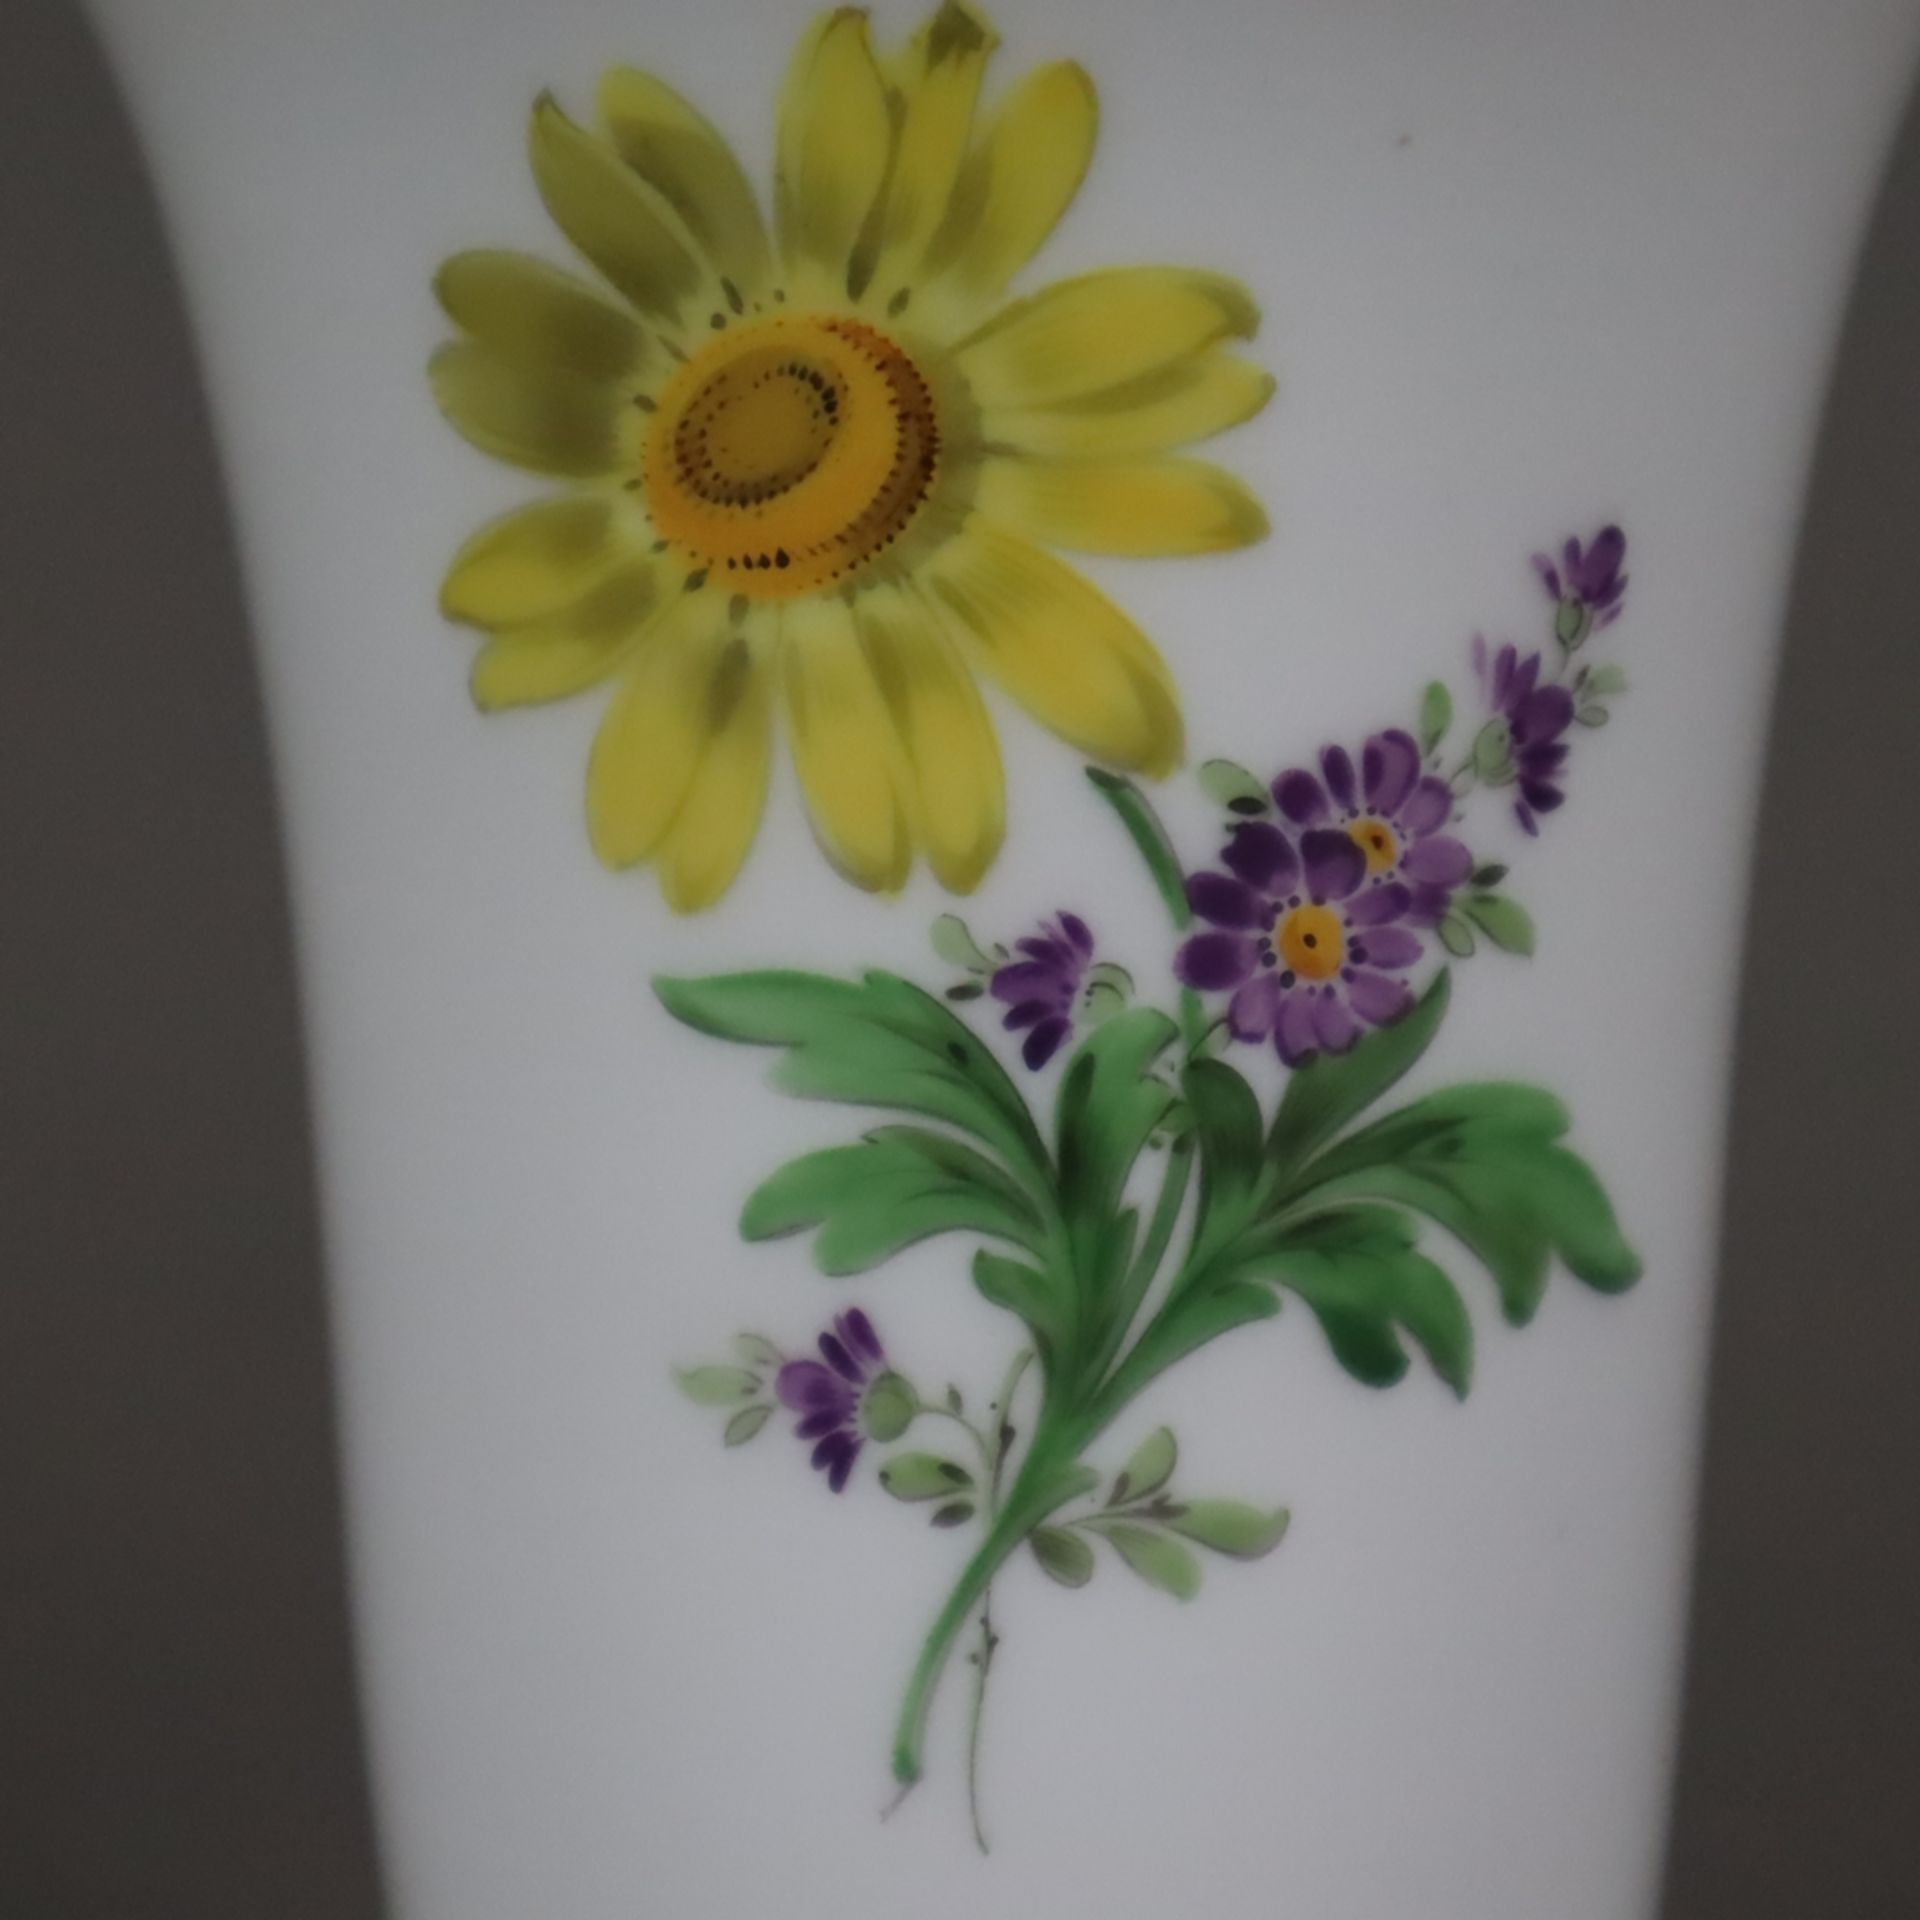 Trichtervase - Meissen, 20. Jh., Porzellan, Blumendekor, Goldakzente, Form "Neuer Ausschnitt", poly - Bild 3 aus 6